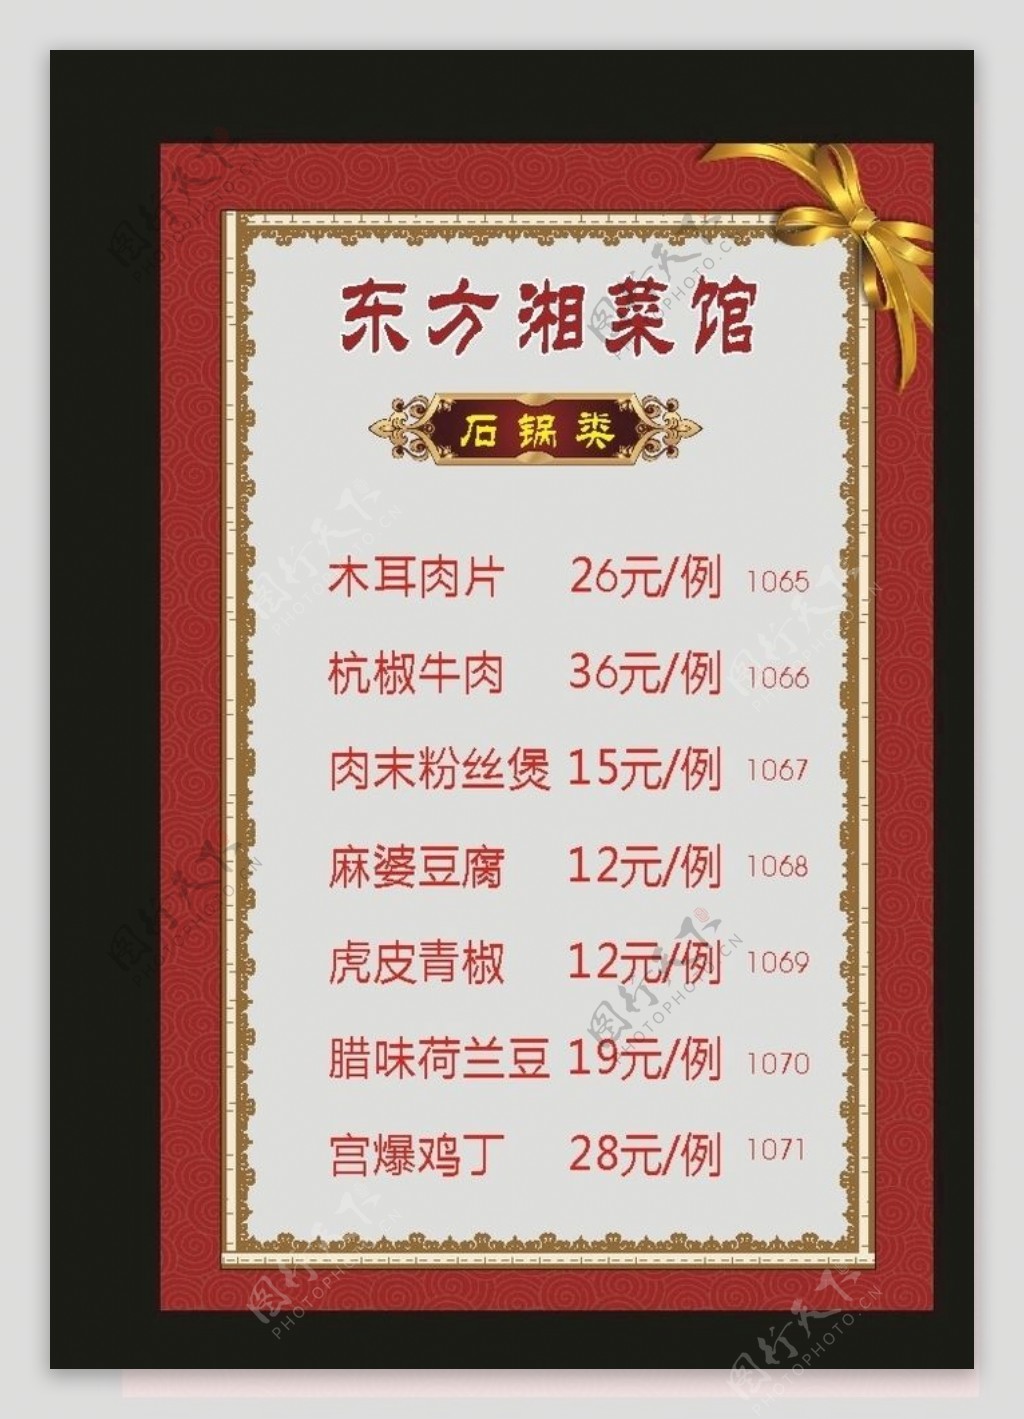 原创酒店2010菜单价格